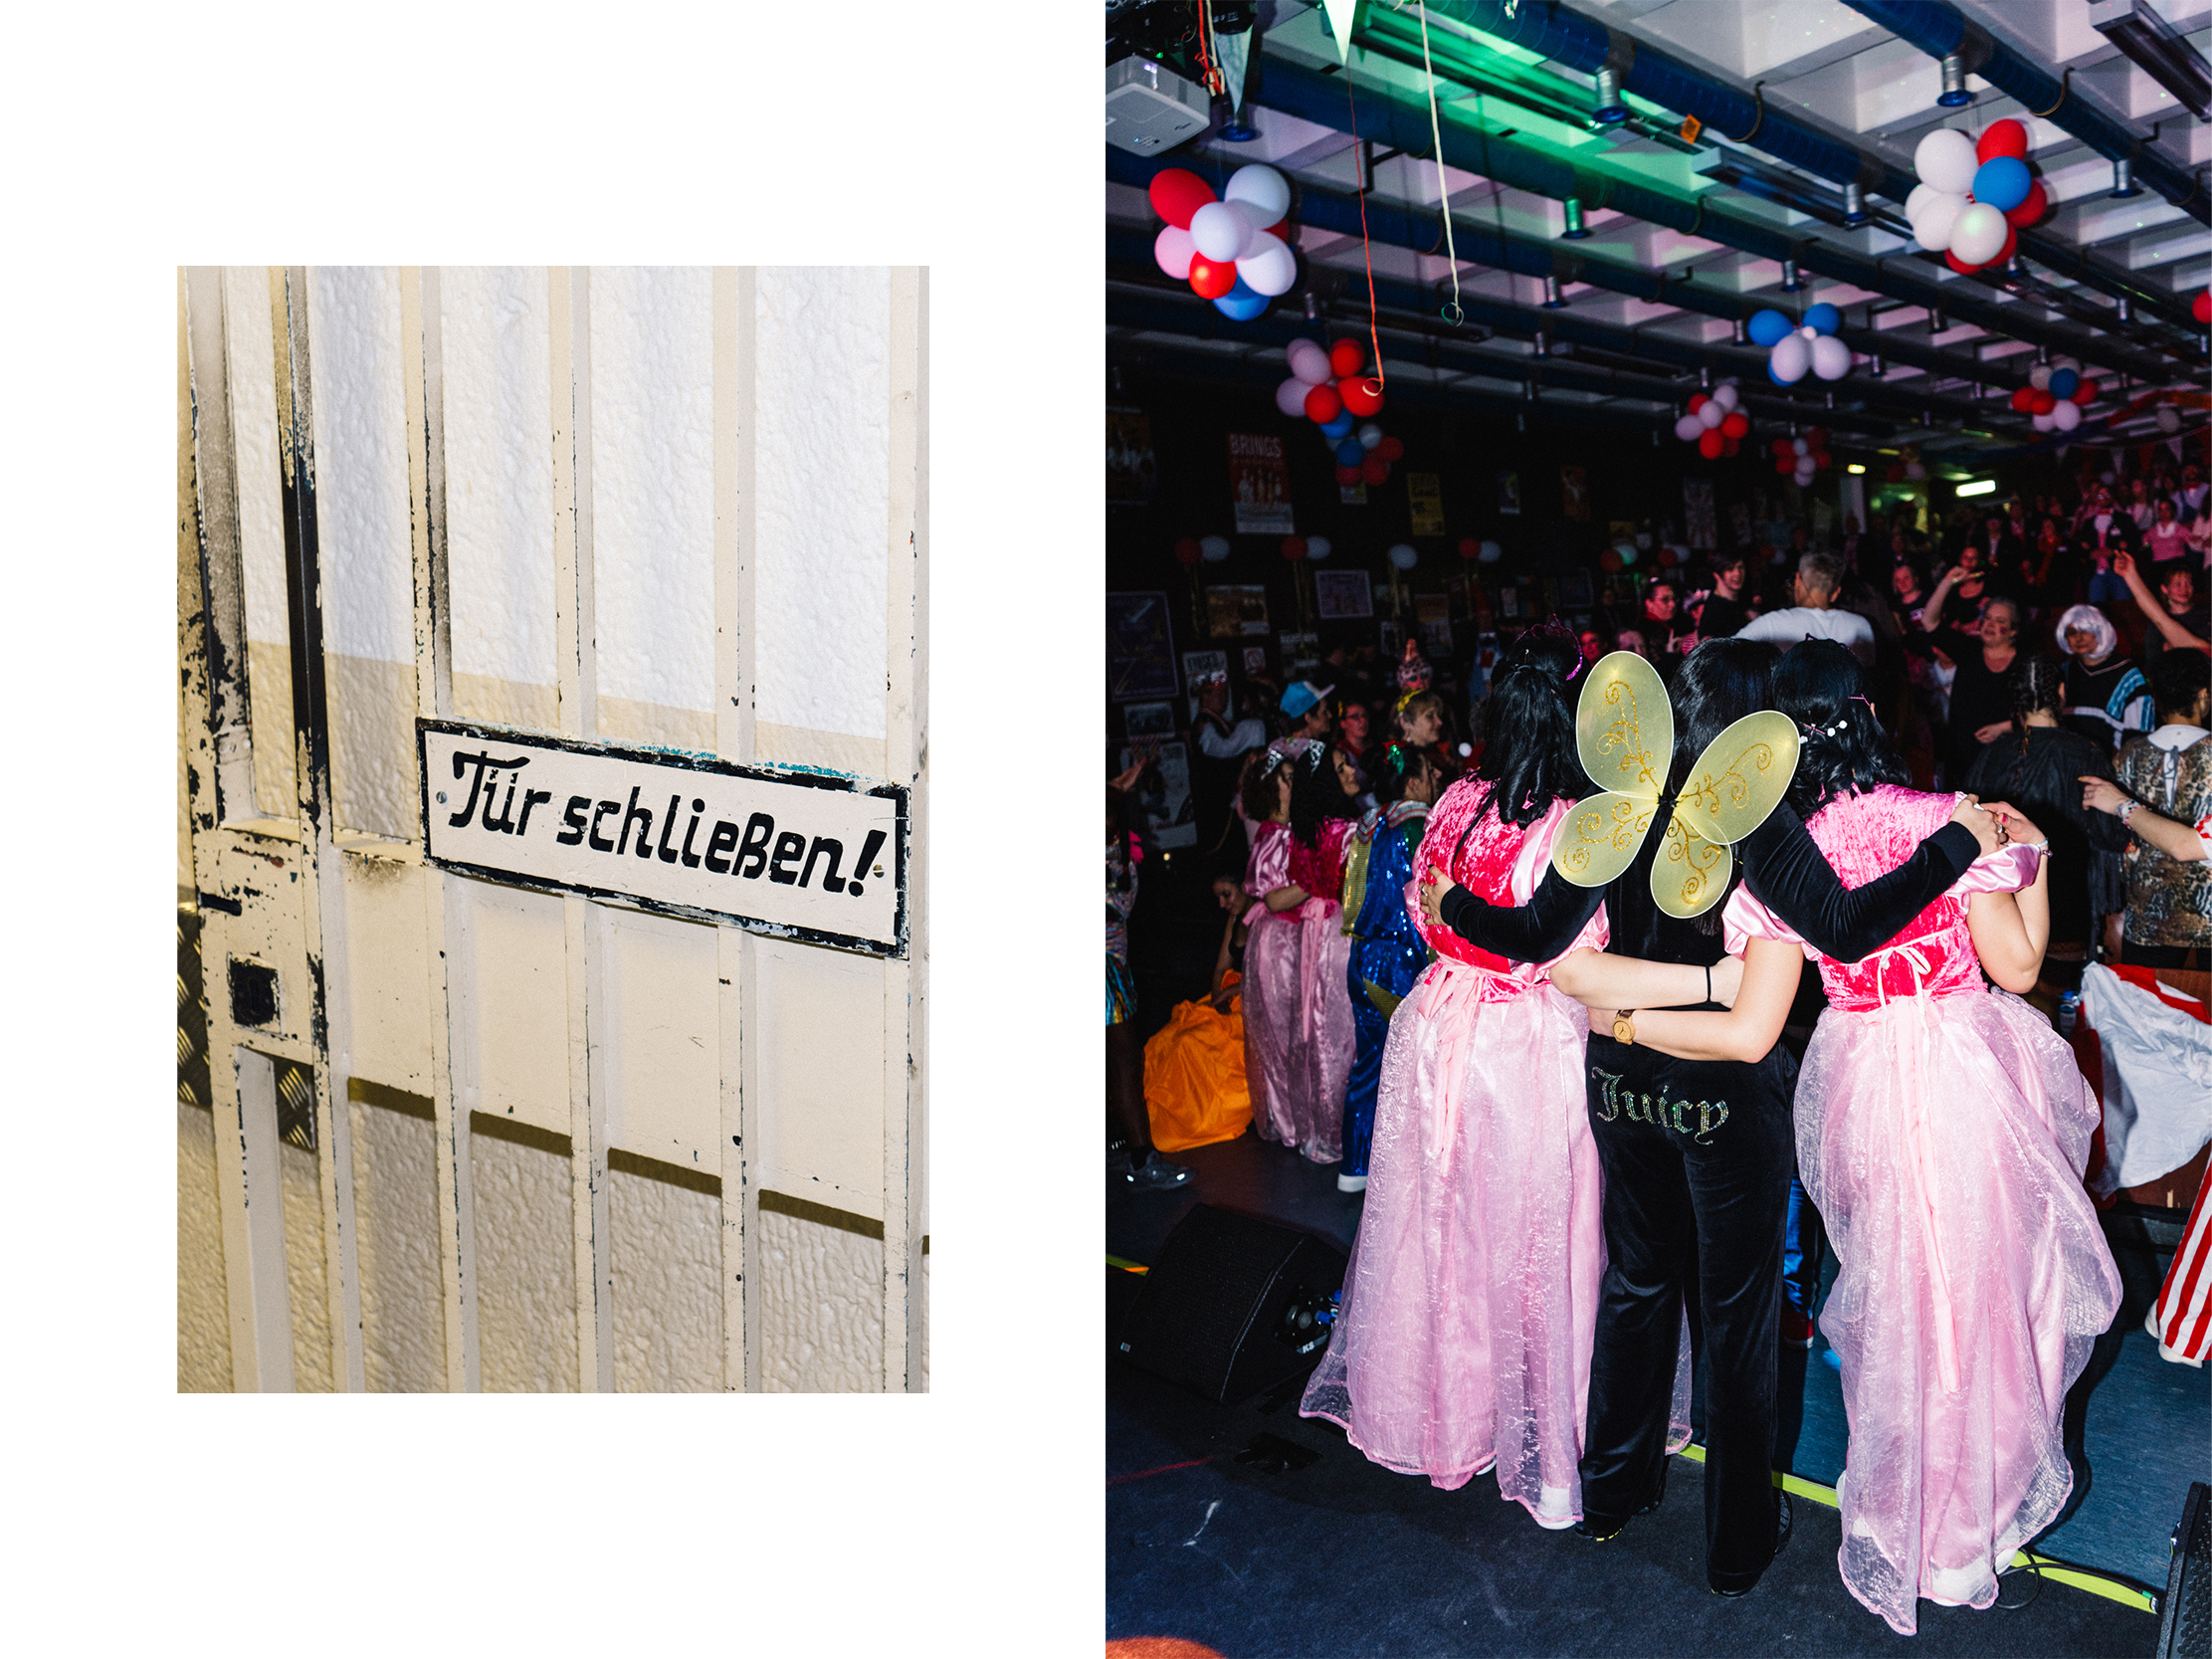 Die Autorin arm in Arm mit zwei inhaftierten Frauen in Prinzessinenkleidern –  Ich habe Karneval im Frauenknast gefeiert